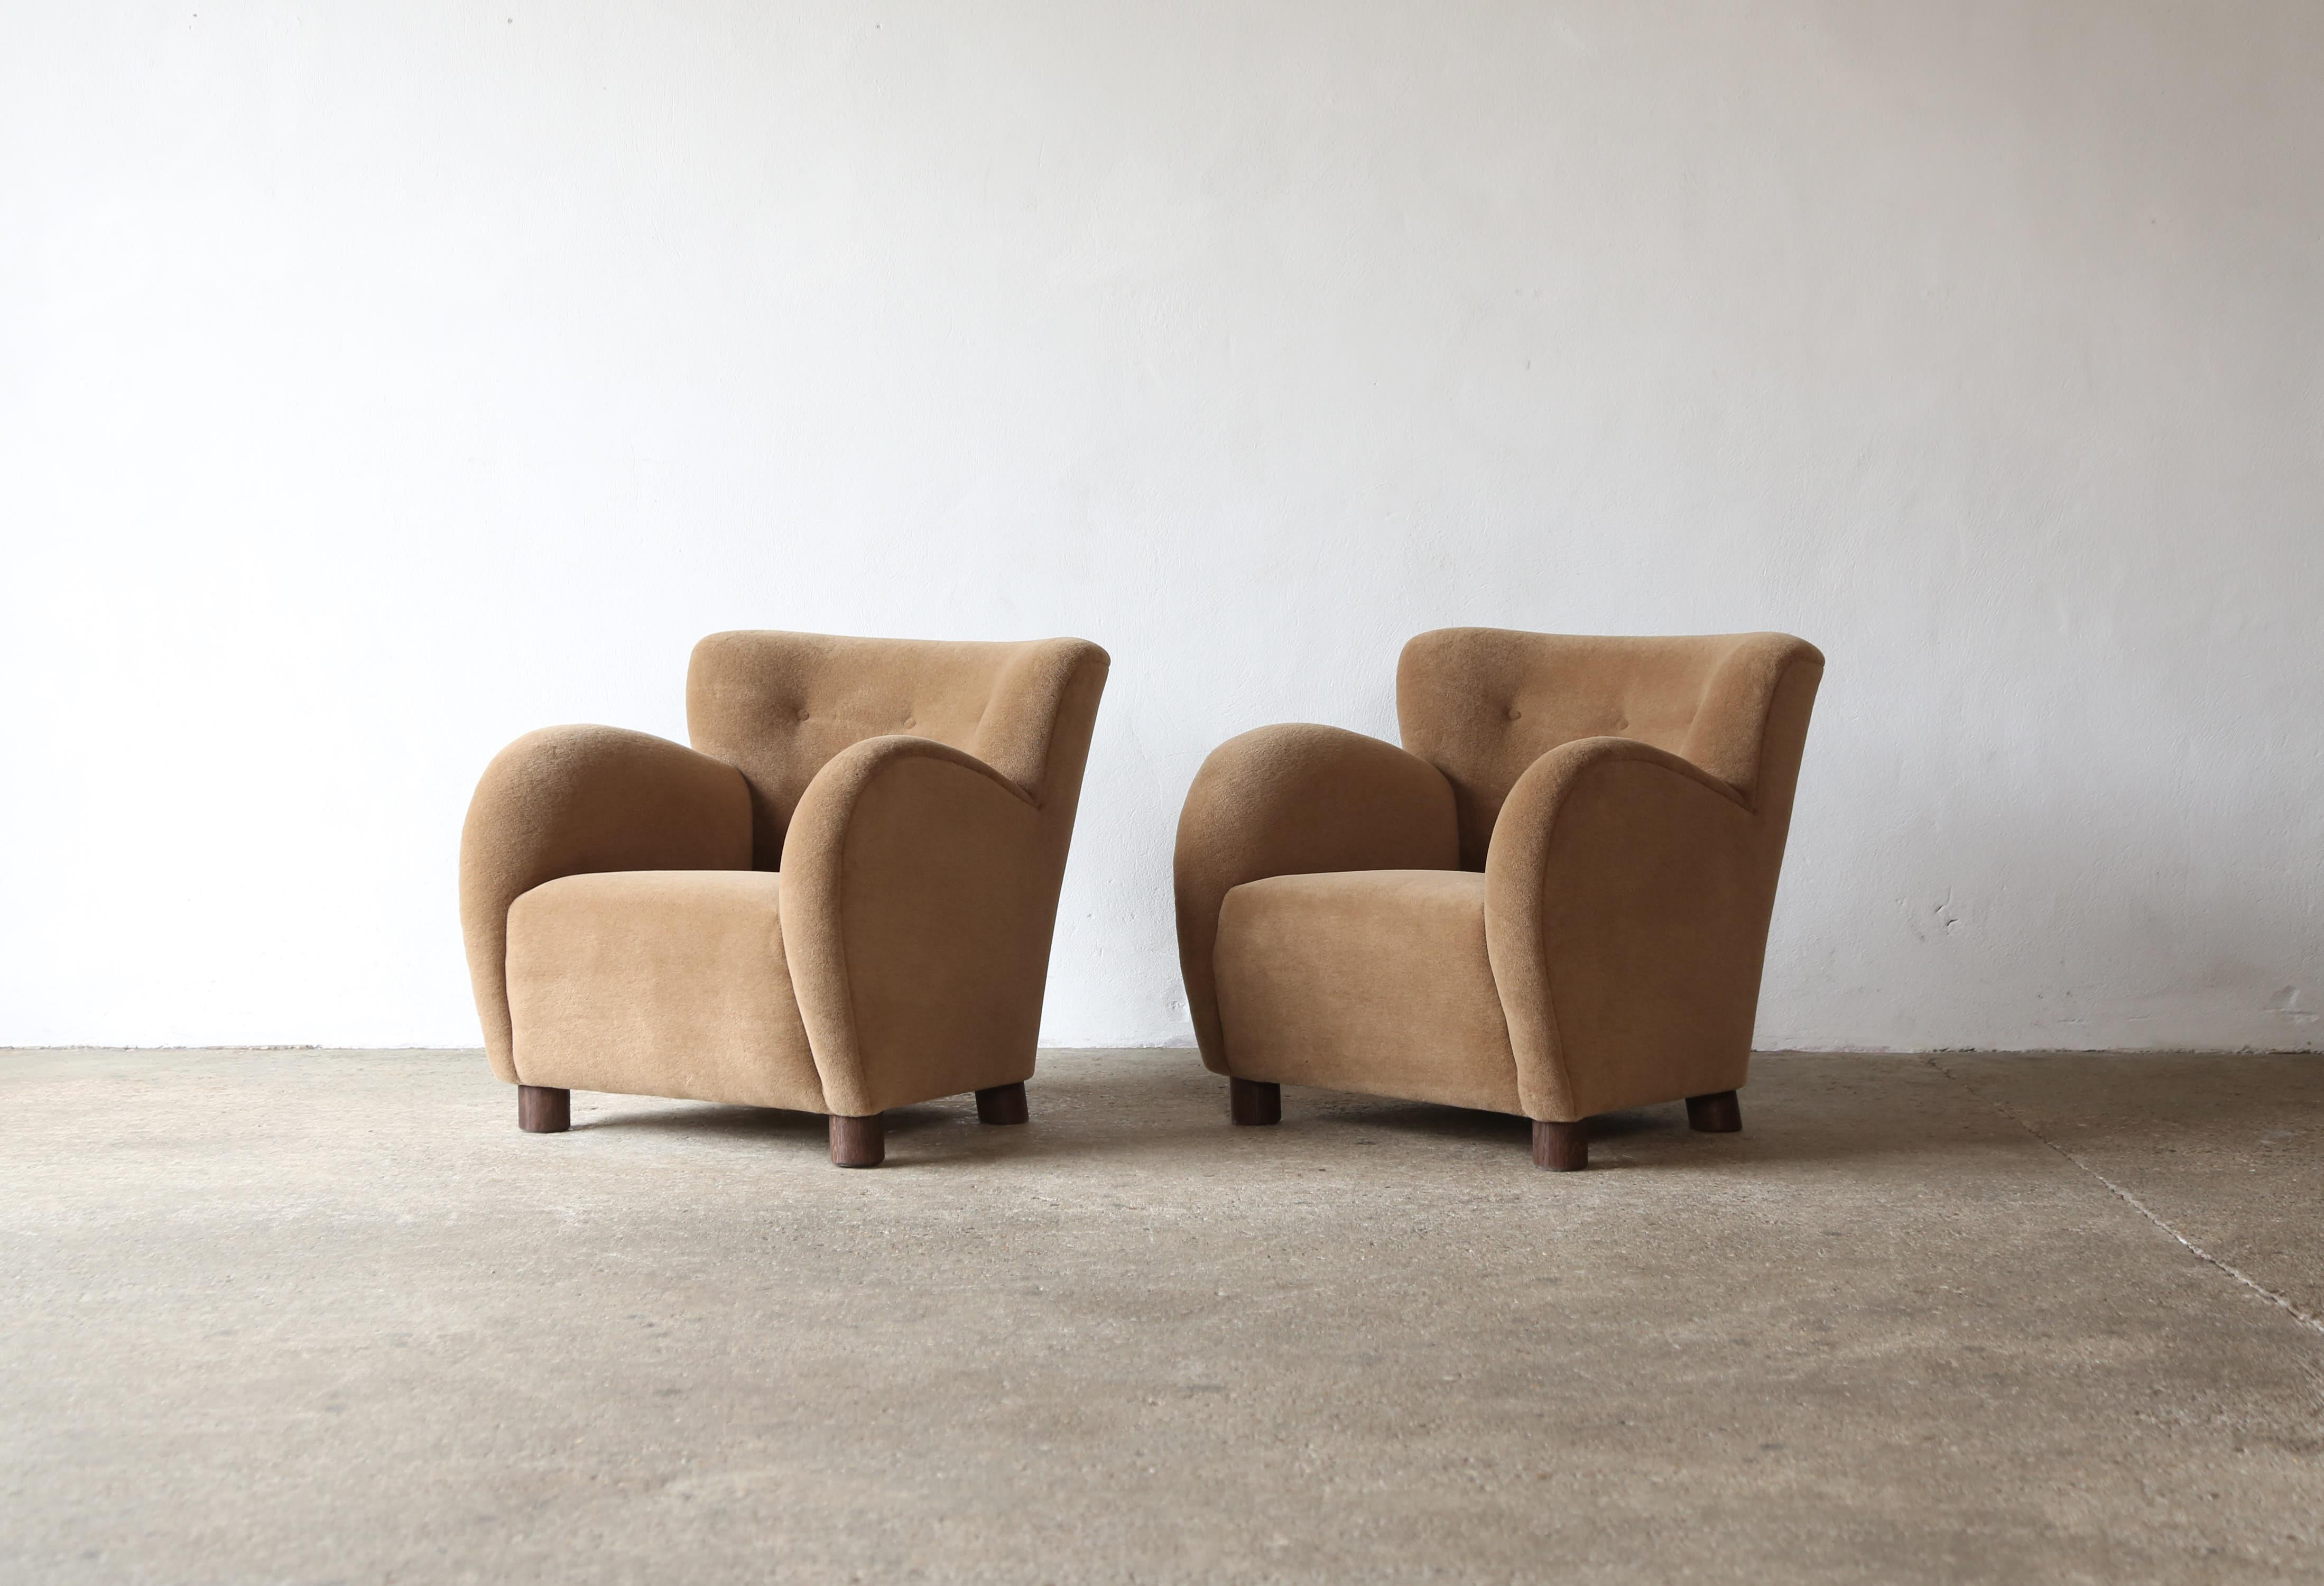 Superbe paire de fauteuils modernes à accoudoirs ronds de style danois. Structure en hêtre fabriquée à la main, assise à ressorts et nouvellement tapissée d'un tissu en pure laine d'alpaga de première qualité, brun doré, doux, avec des pieds en